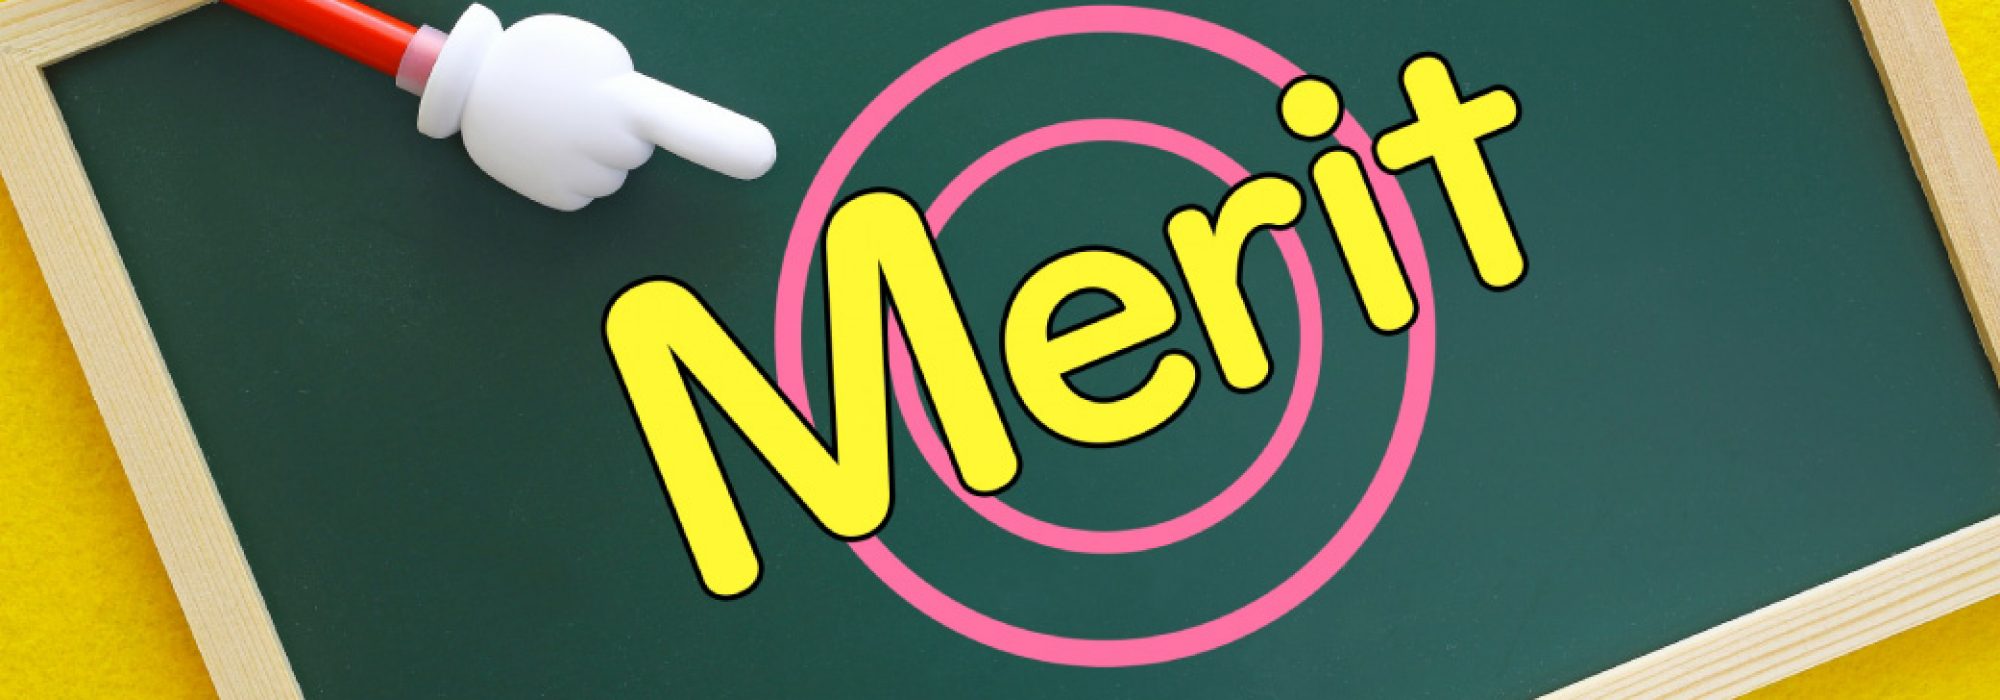 MERIT-01